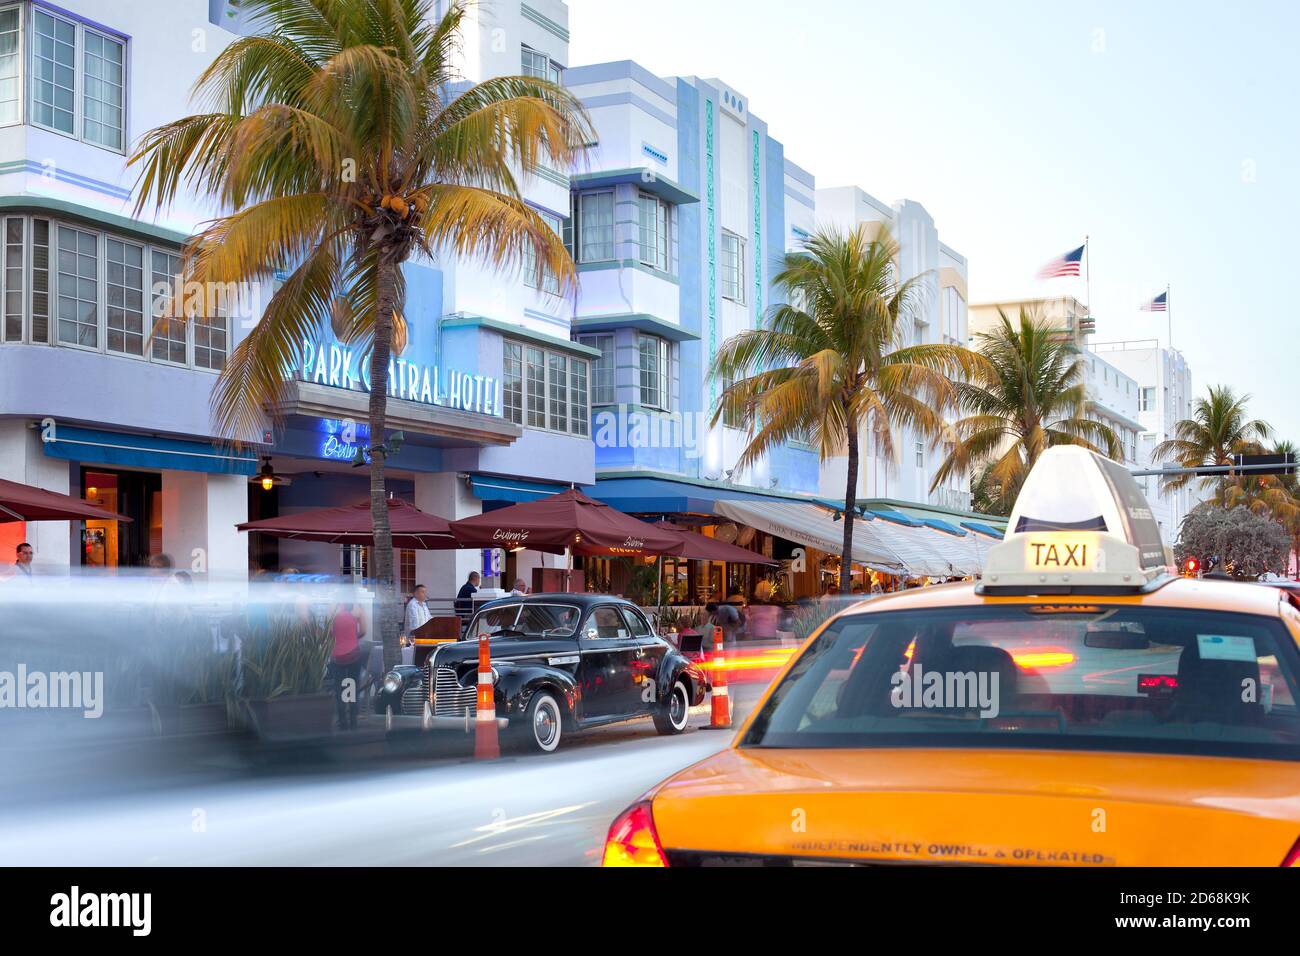 South Beach, Miami, Florida, Vereinigte Staaten - Hotels, Bars und Restaurants am Ocean Drive im berühmten Art-Deco-Viertel. Stockfoto